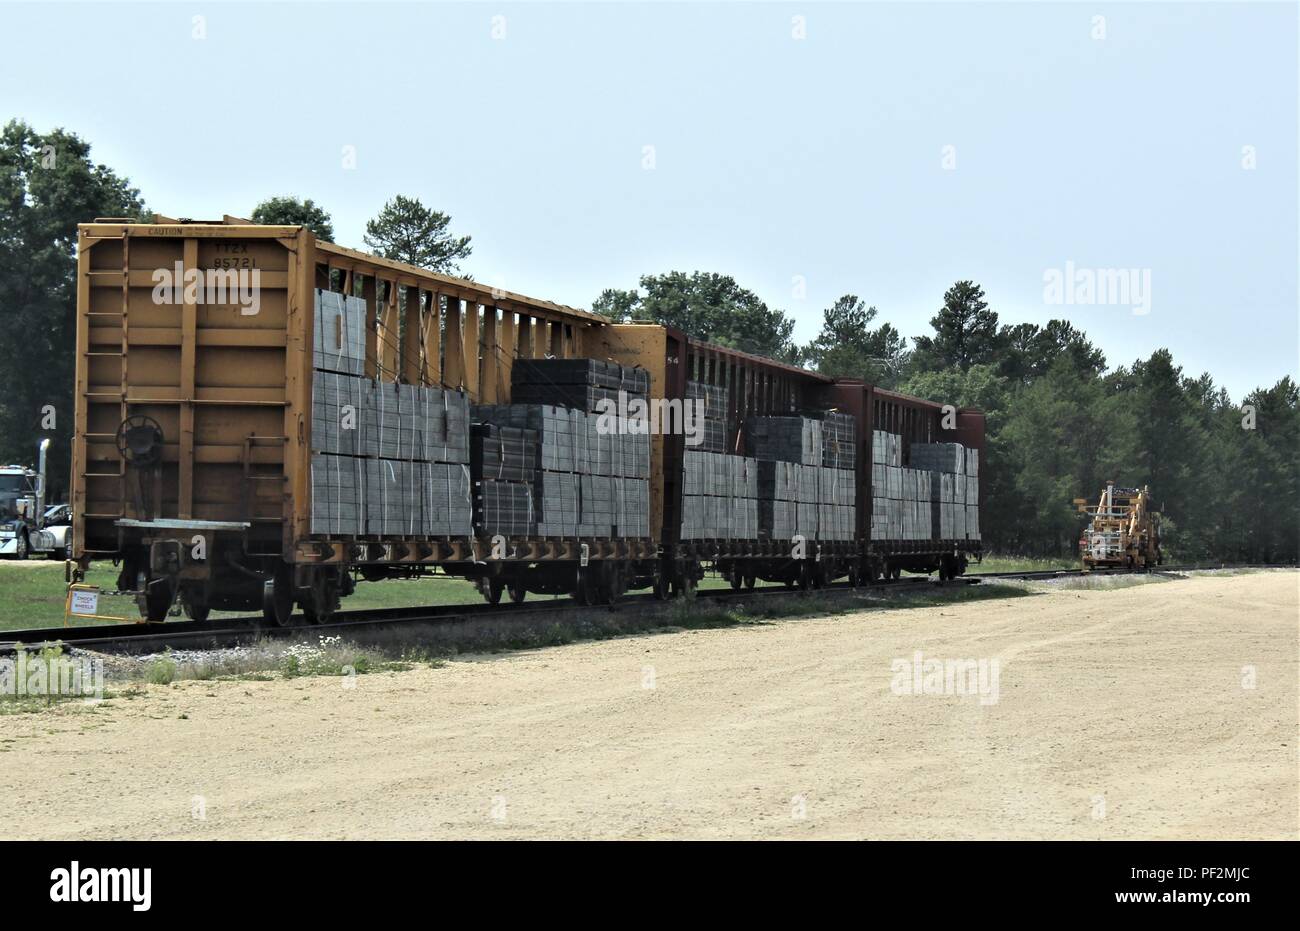 Un veicolo ferroviario caricato con traversine ferroviarie è mostrato il  Agosto 14, 2018 presso il cantiere ferroviario a Fort McCoy, Wis. Fort  McCoy infrastruttura ferroviaria ha visto miglioramenti negli ultimi anni e